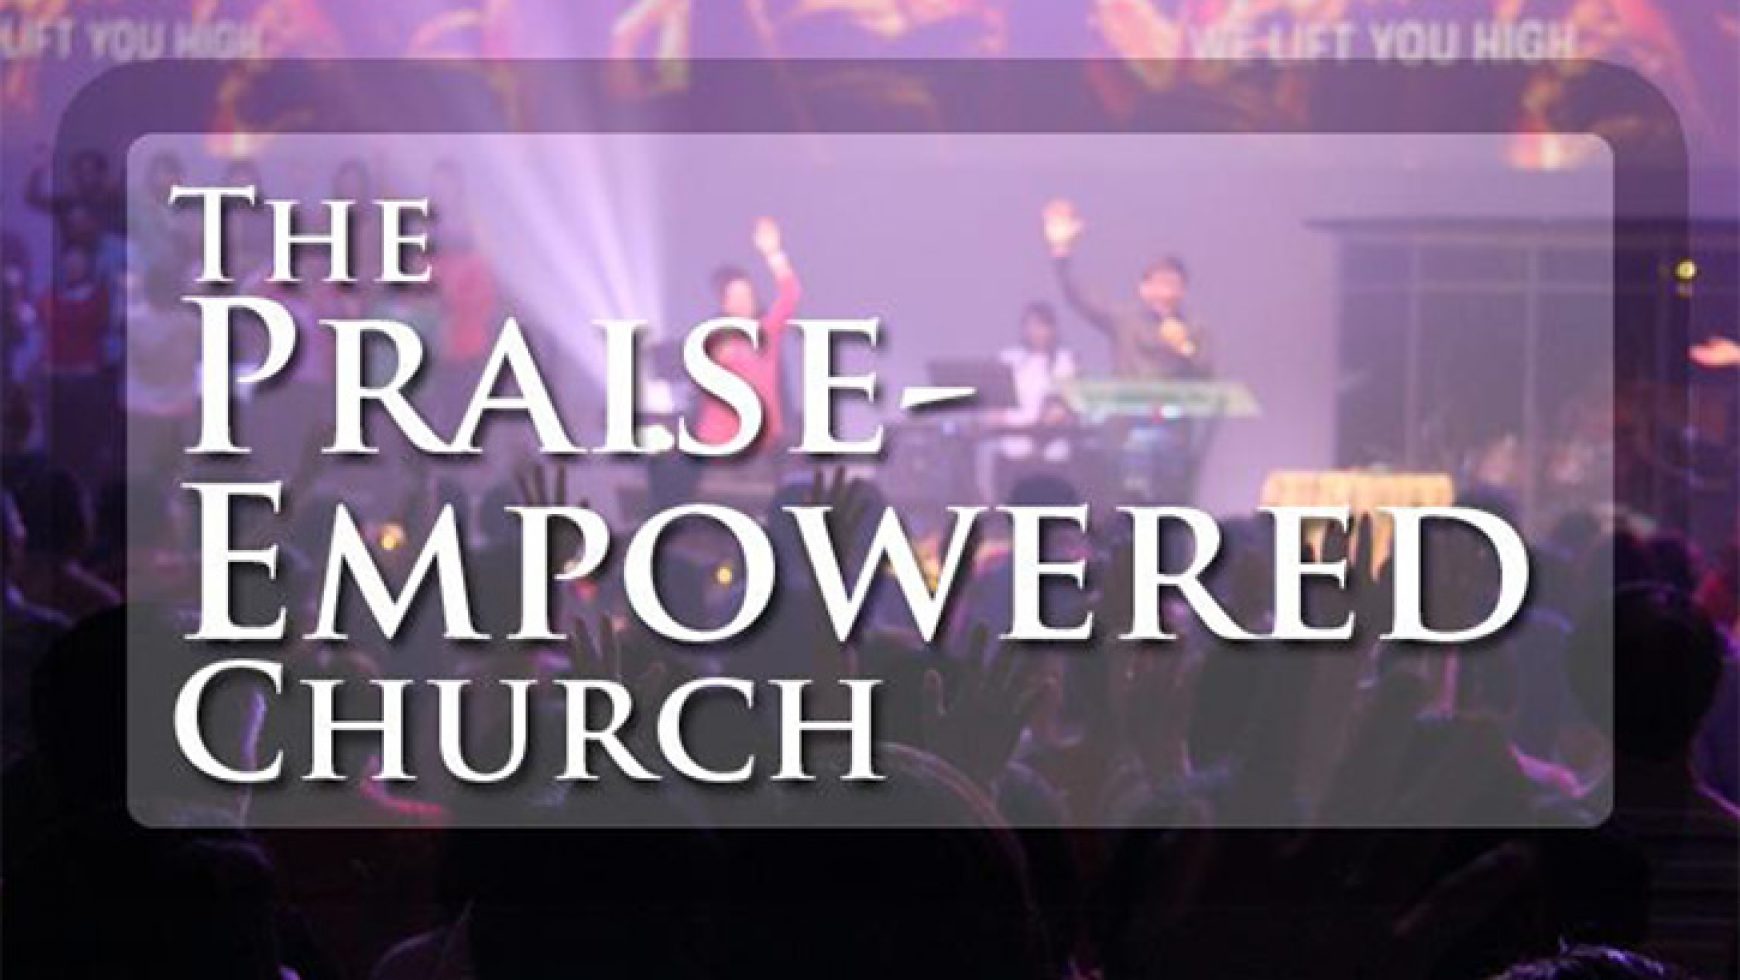 The Praise-Empowered Church